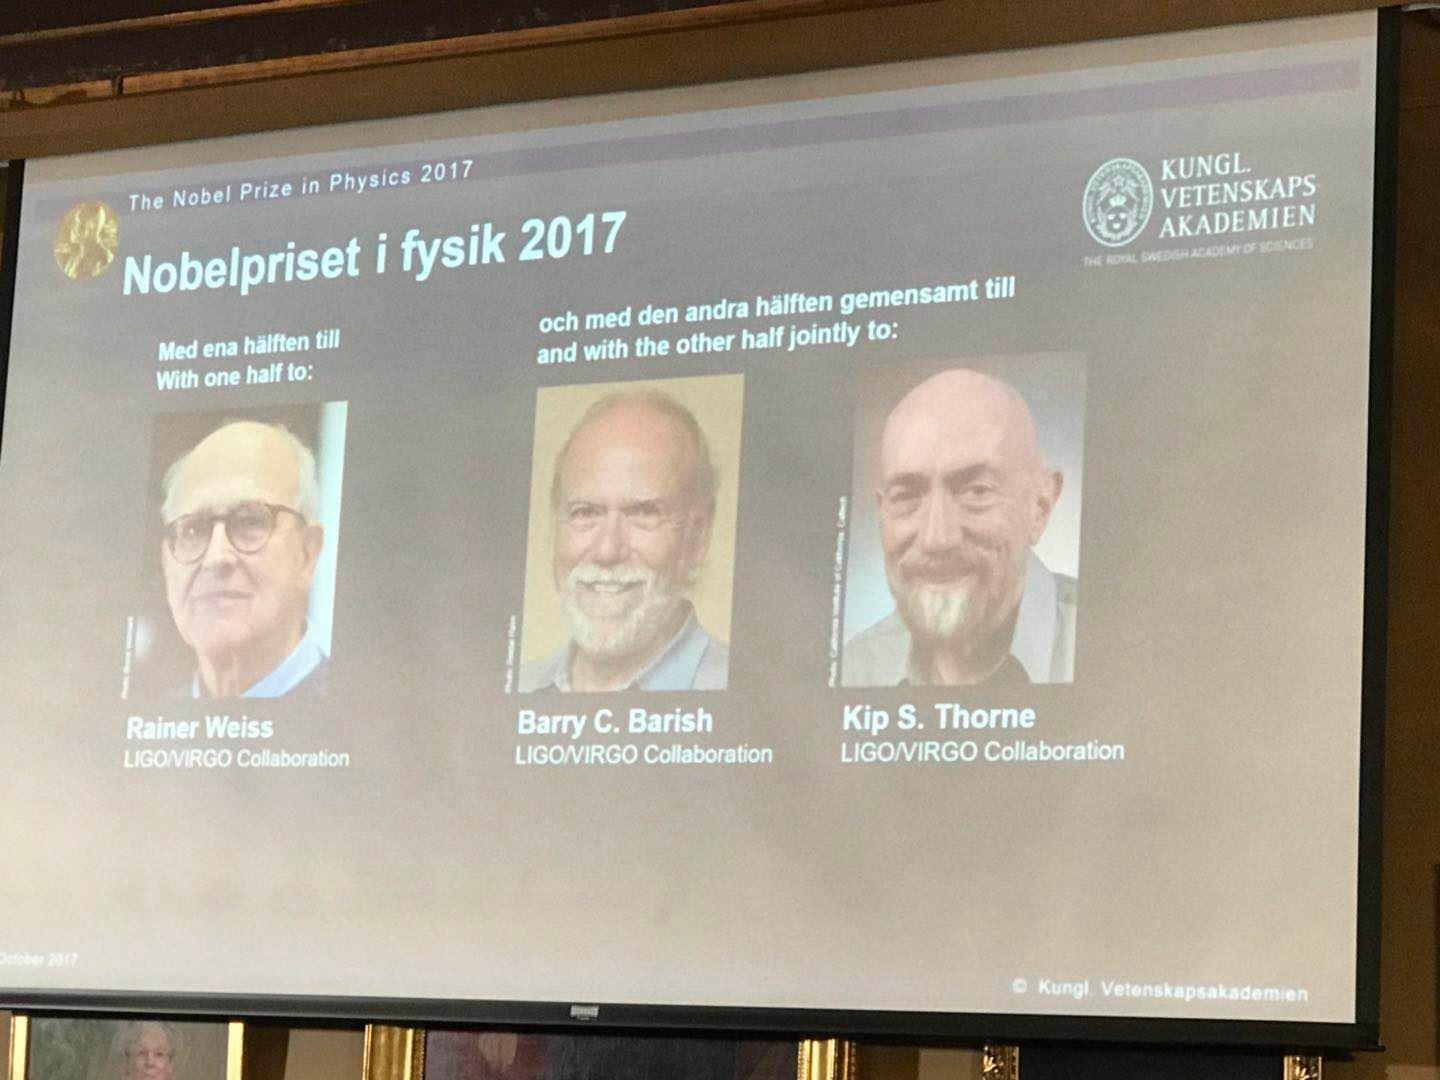 诺贝尔物理学奖颁布:三物理学家因引力波探测